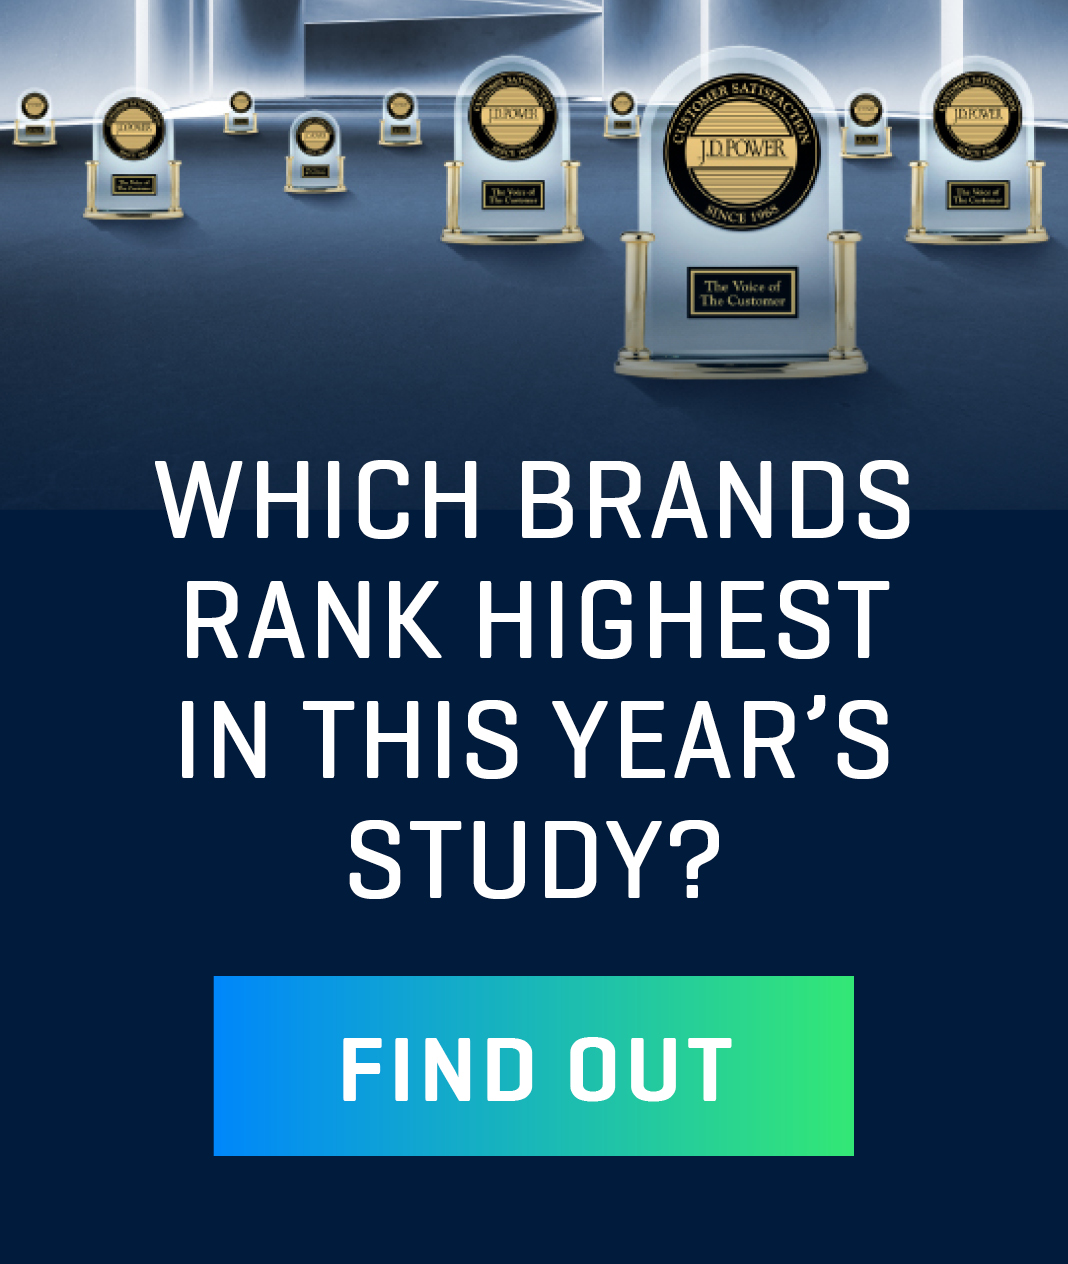 Which brands rank highest?